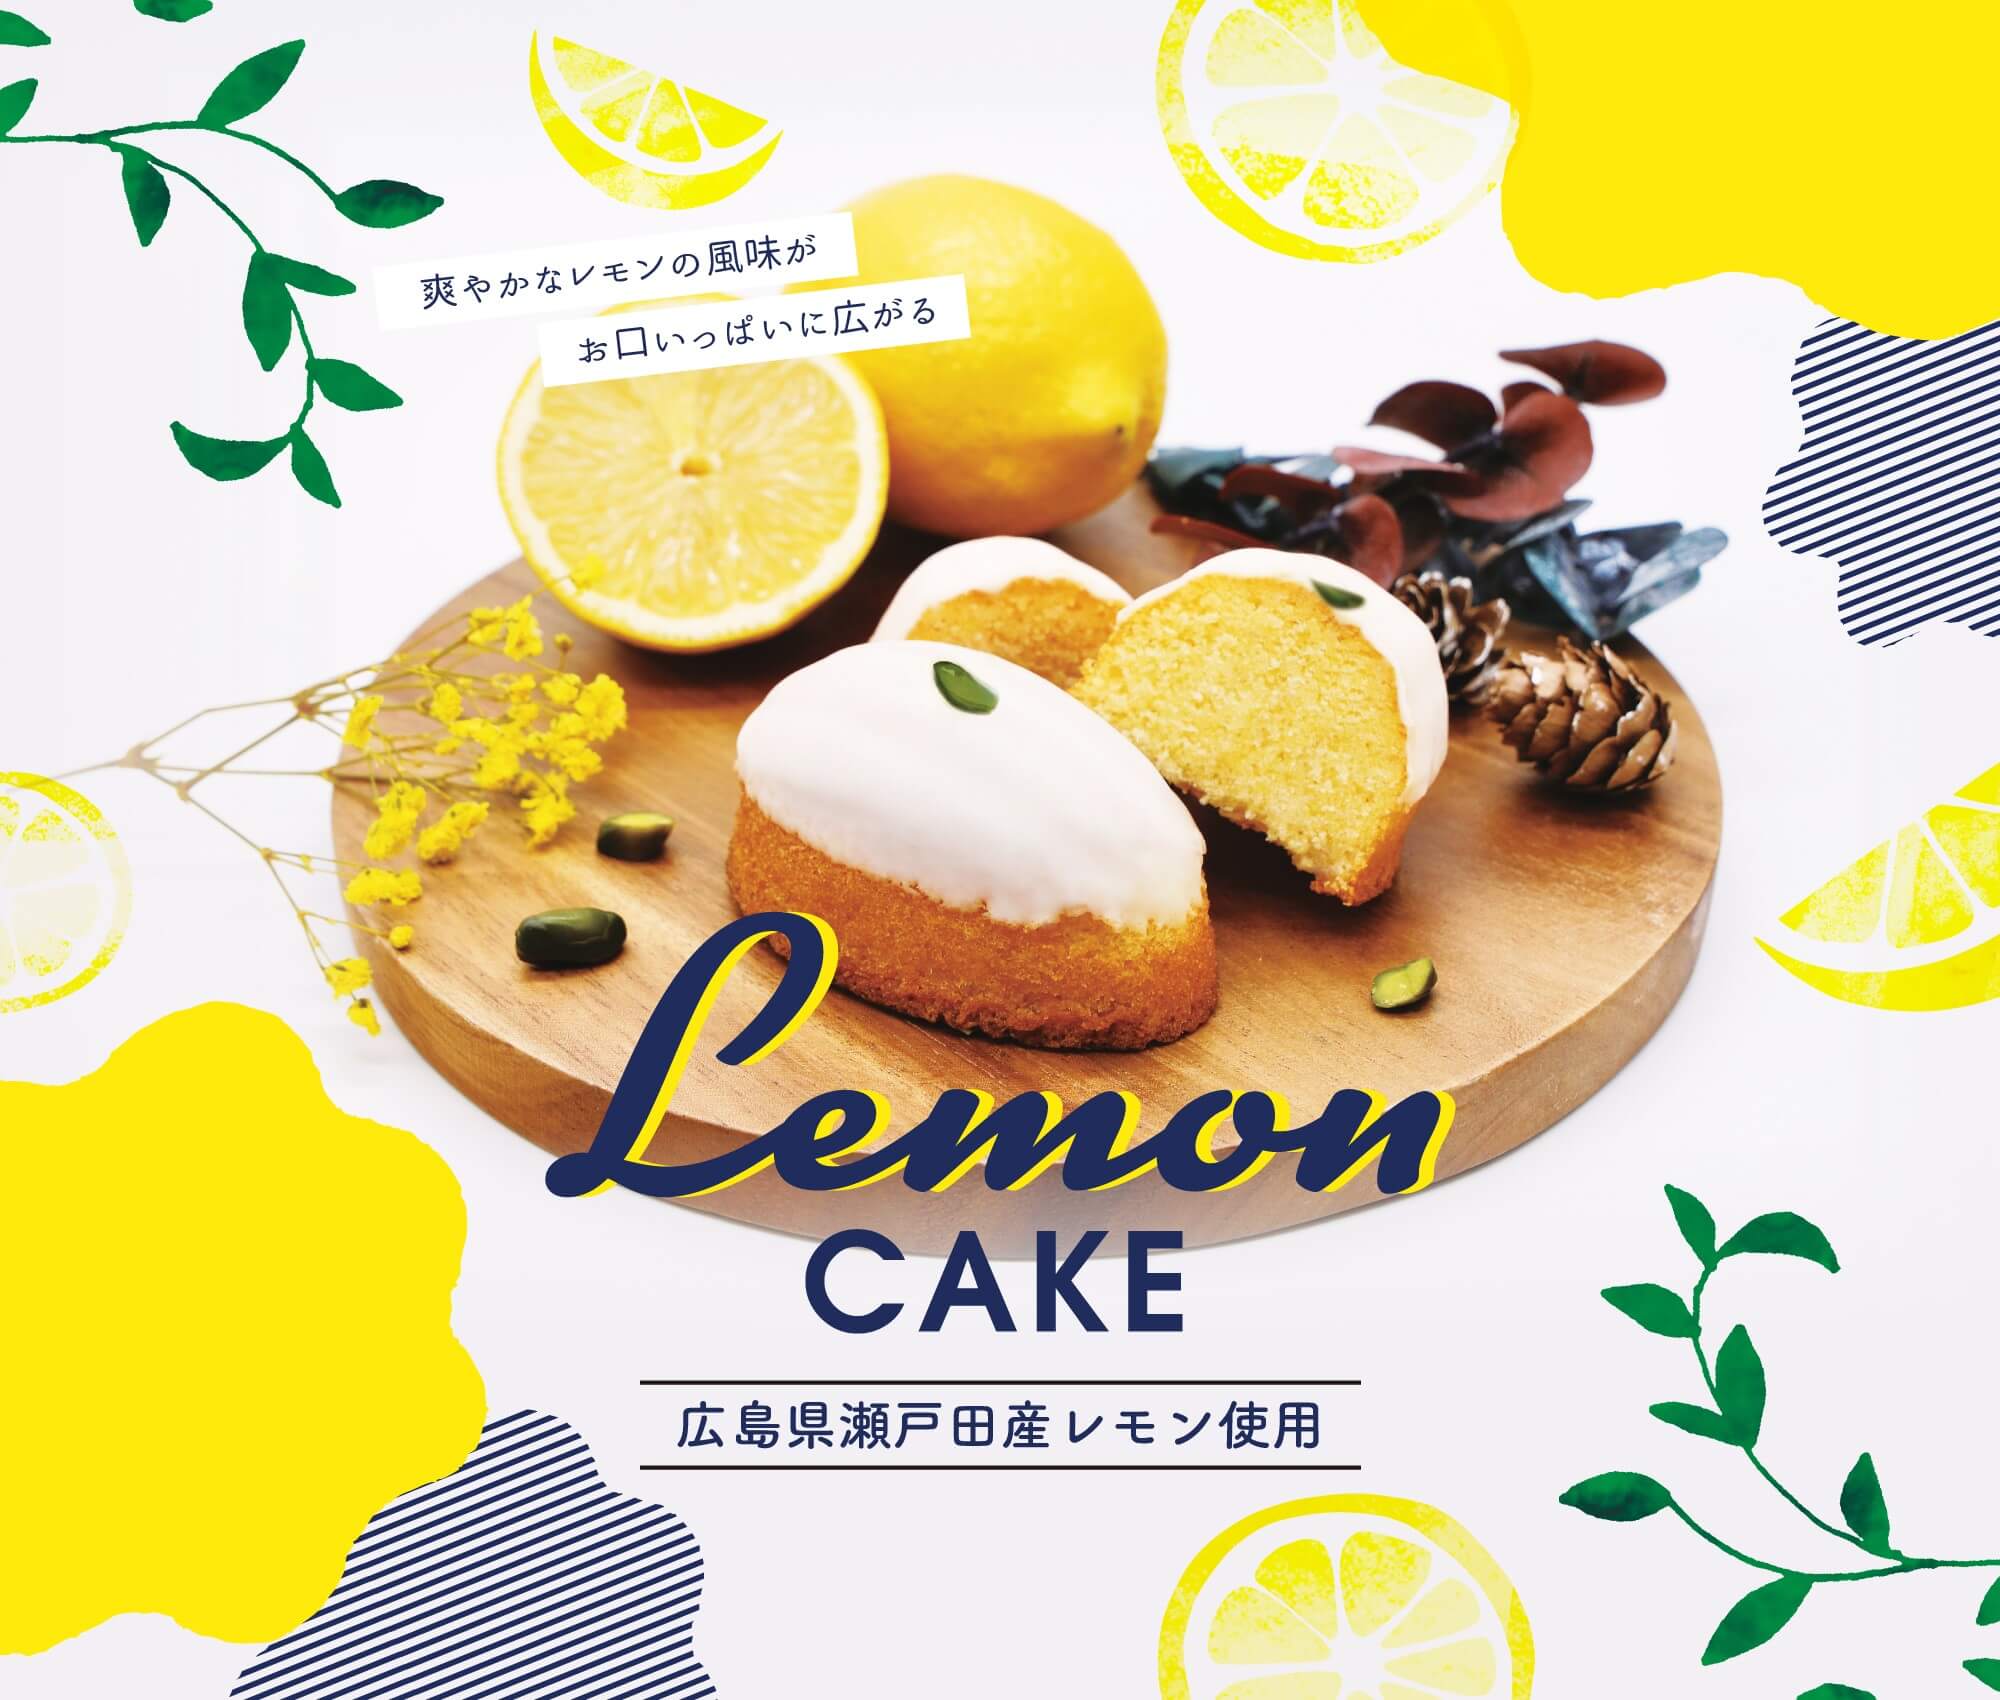 Onlineshop限定 瀬戸田レモンを使った焼菓子のセット販売開始 Arrow Tree アローツリー